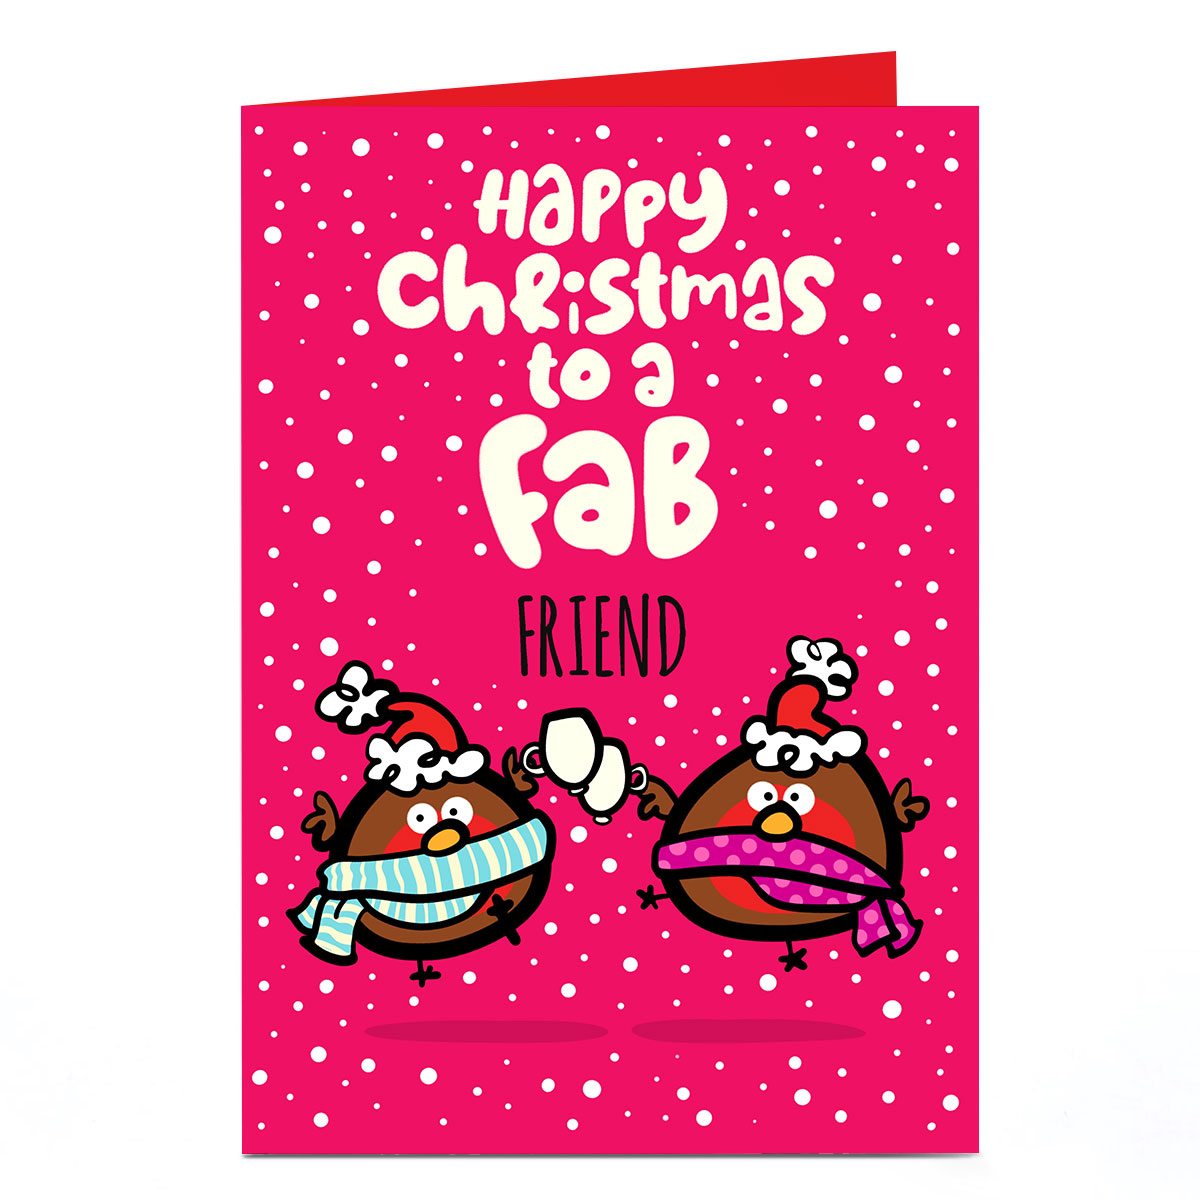 Personalised Fruitloops Christmas Card - Fab Friend 